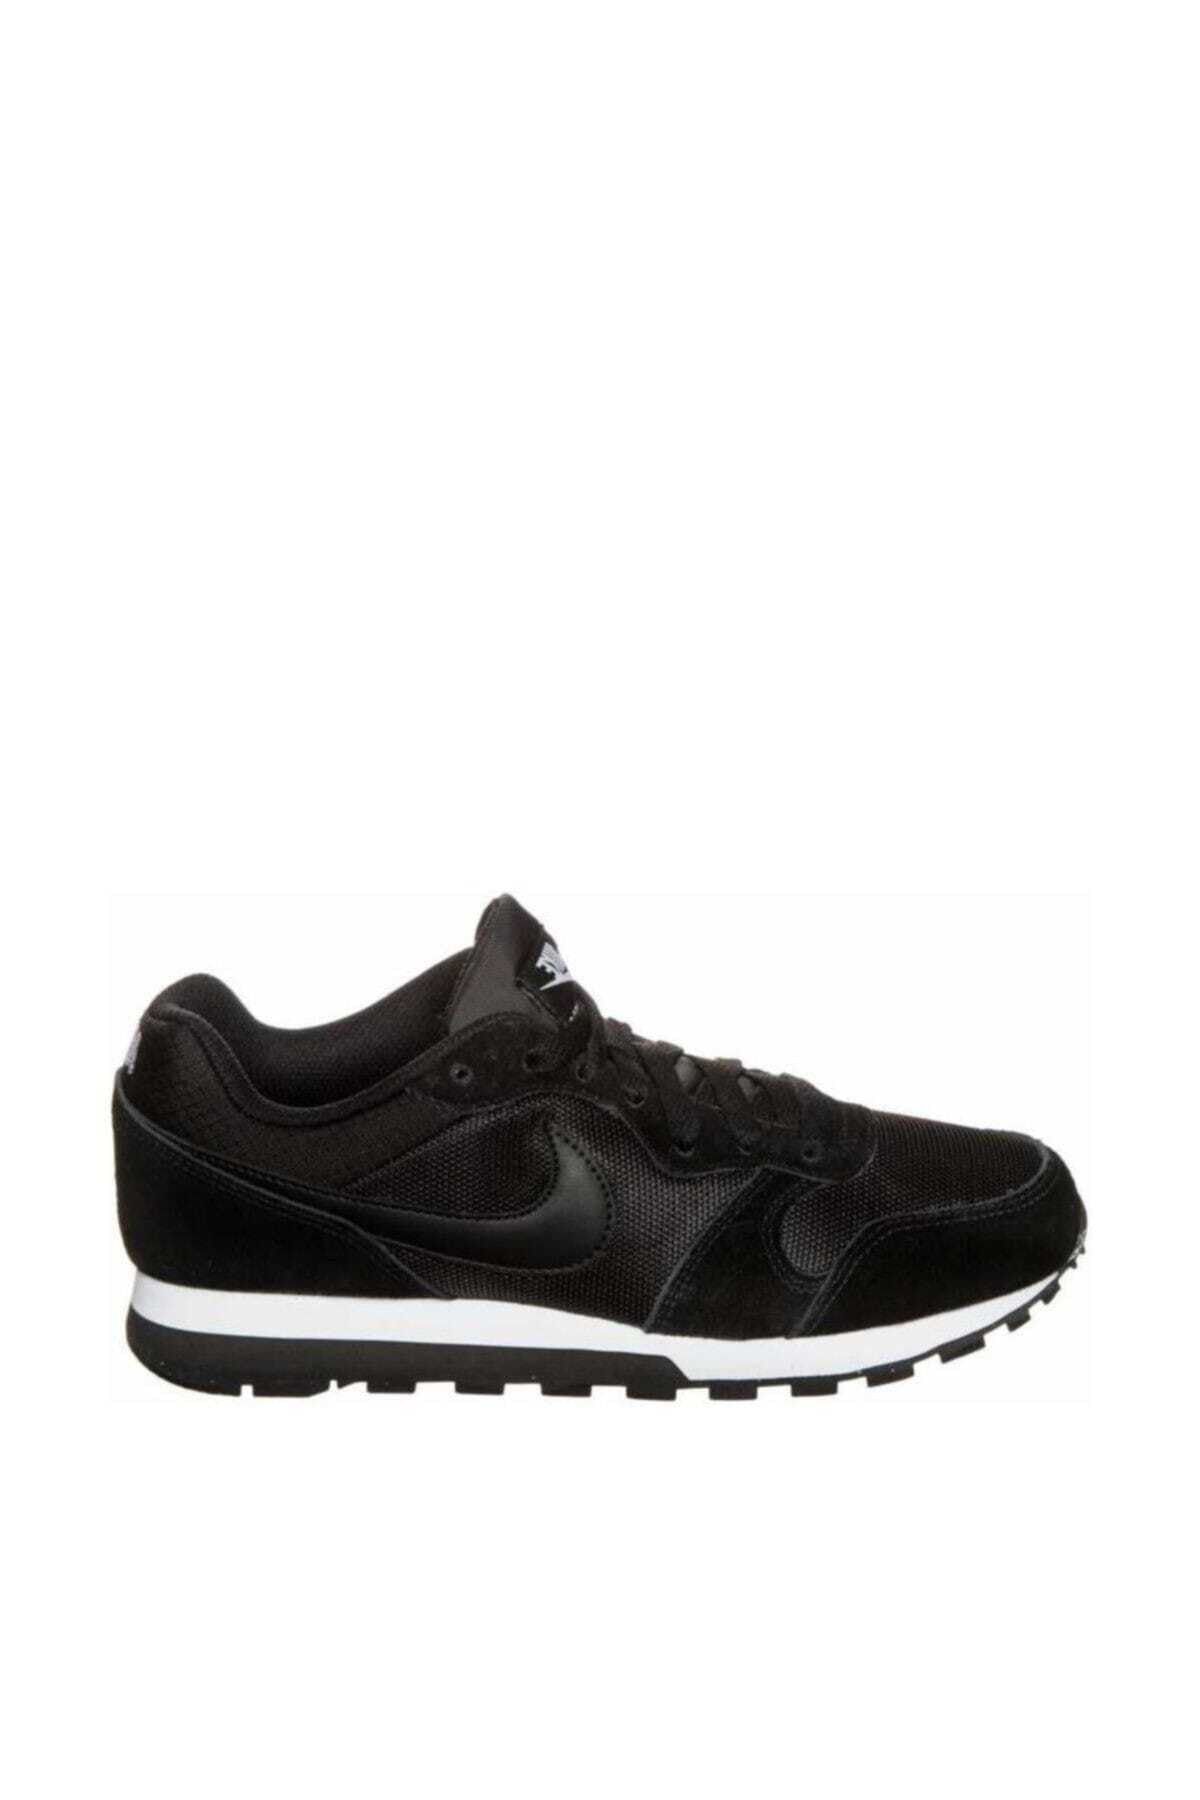 Nike MD Runner Kadın Ayakkabısı - 749869-001